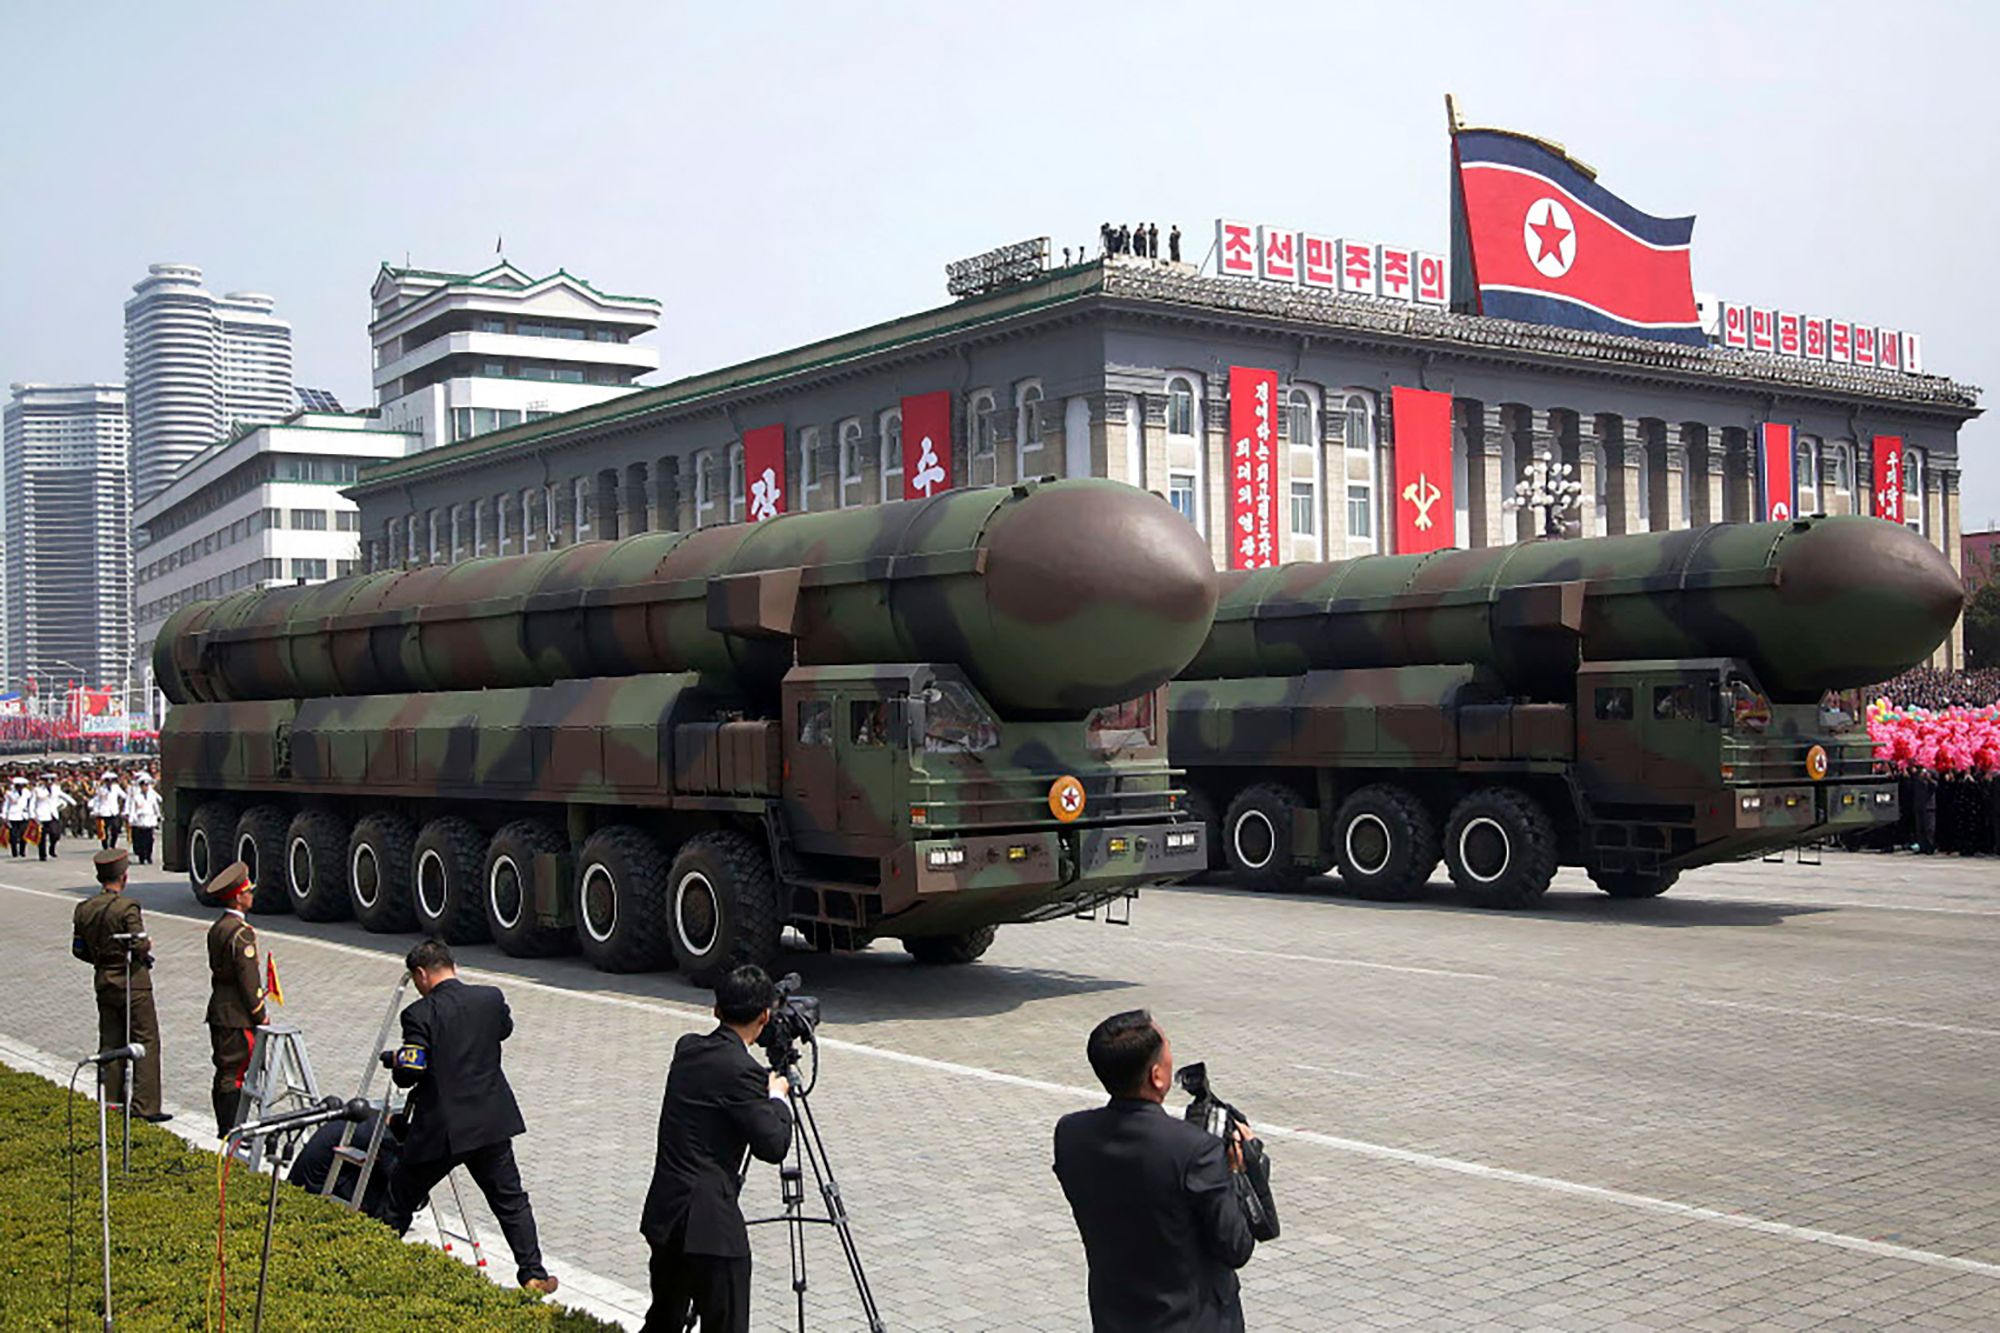 La Corea del Nord lancia un missile balistico, Tokyo risponde: "Minaccia per la pace"